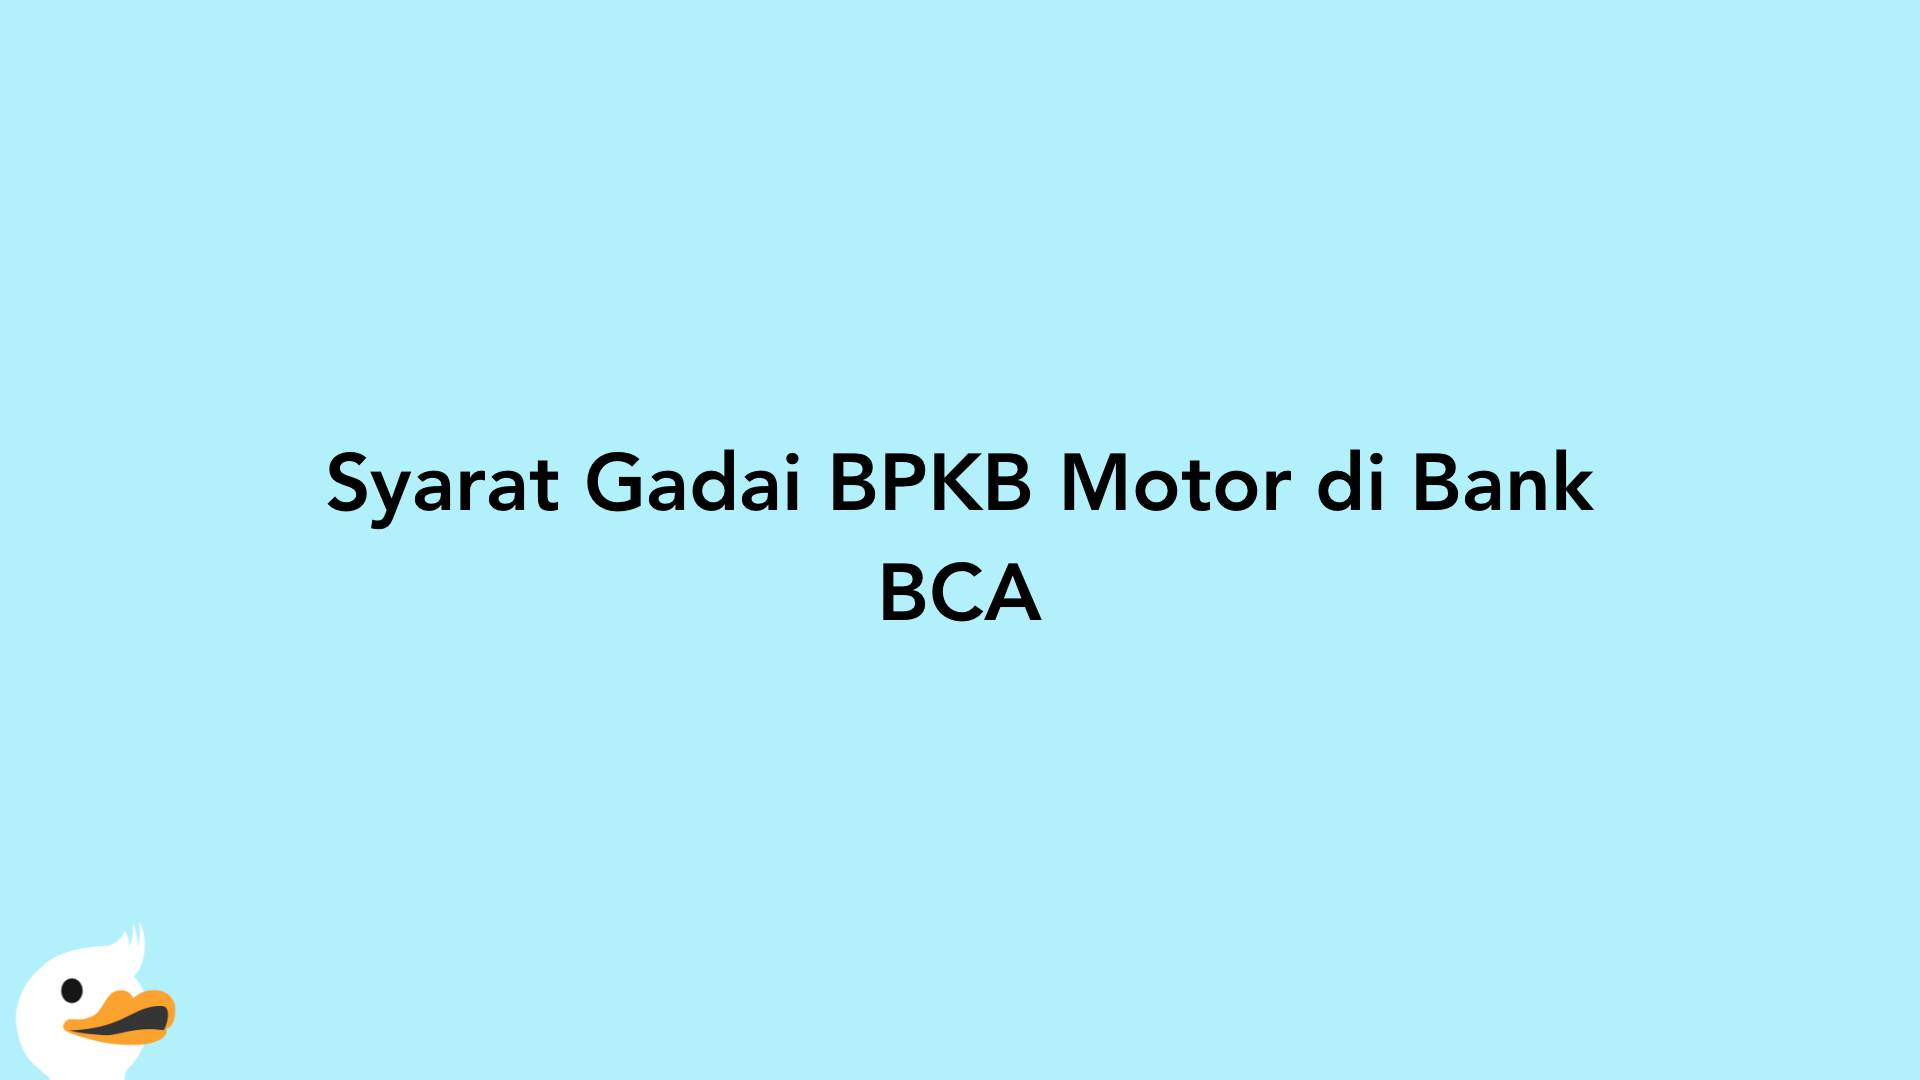 Syarat Gadai BPKB Motor di Bank BCA